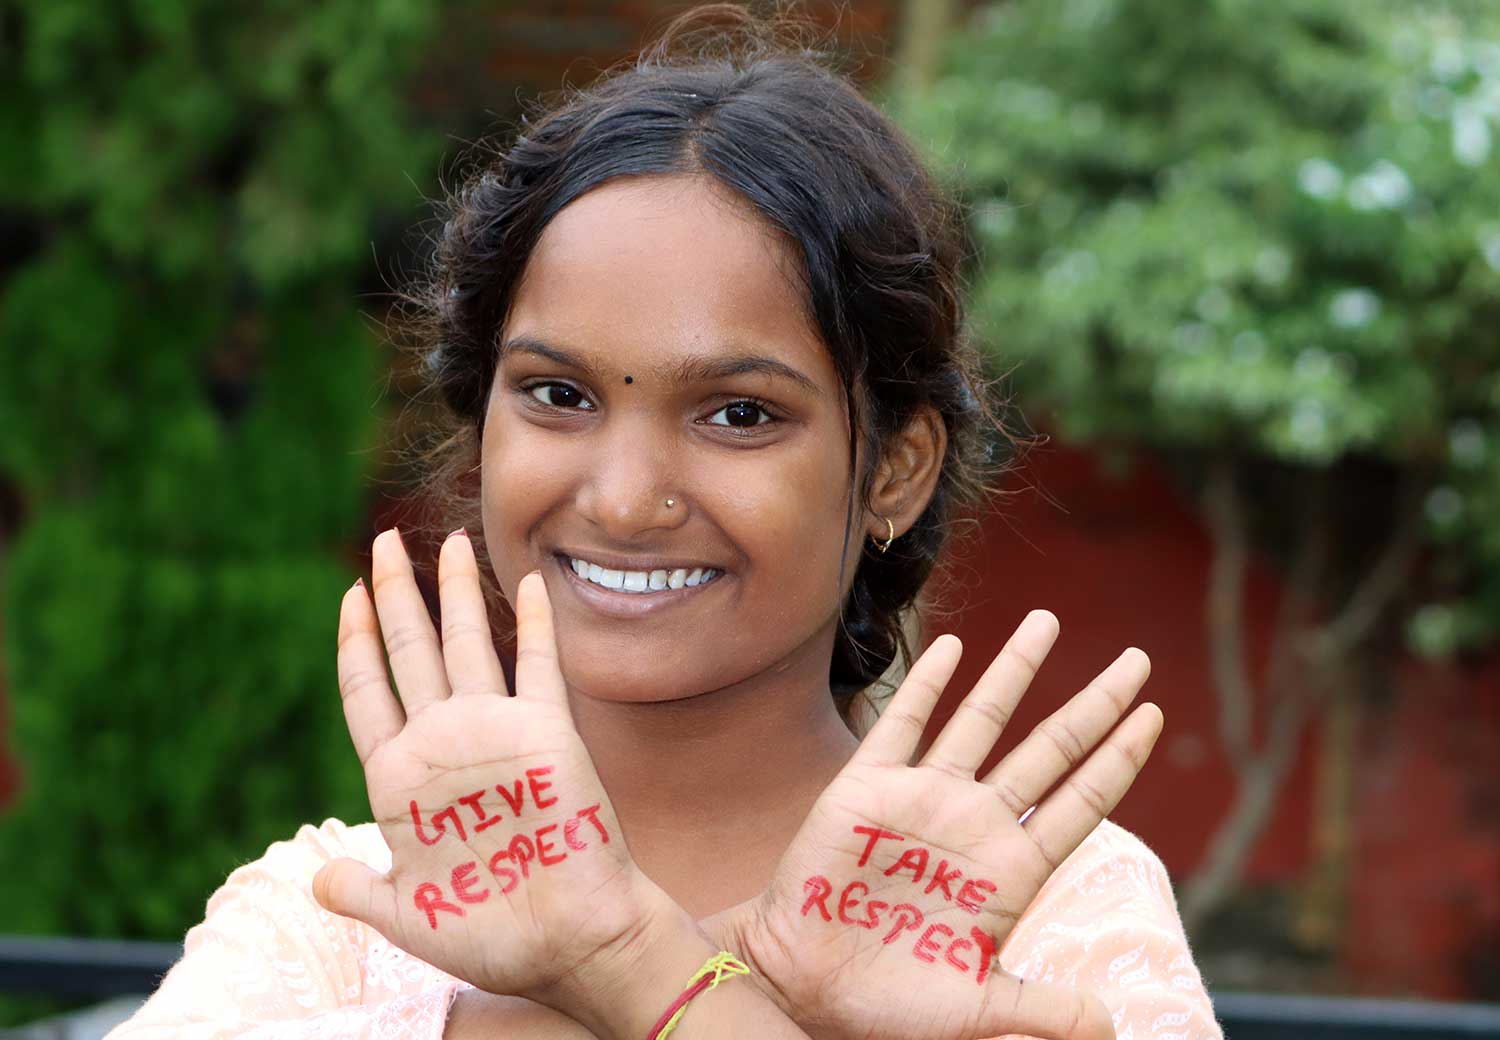 Jente med skrift på hendene: Give respect, take respect.